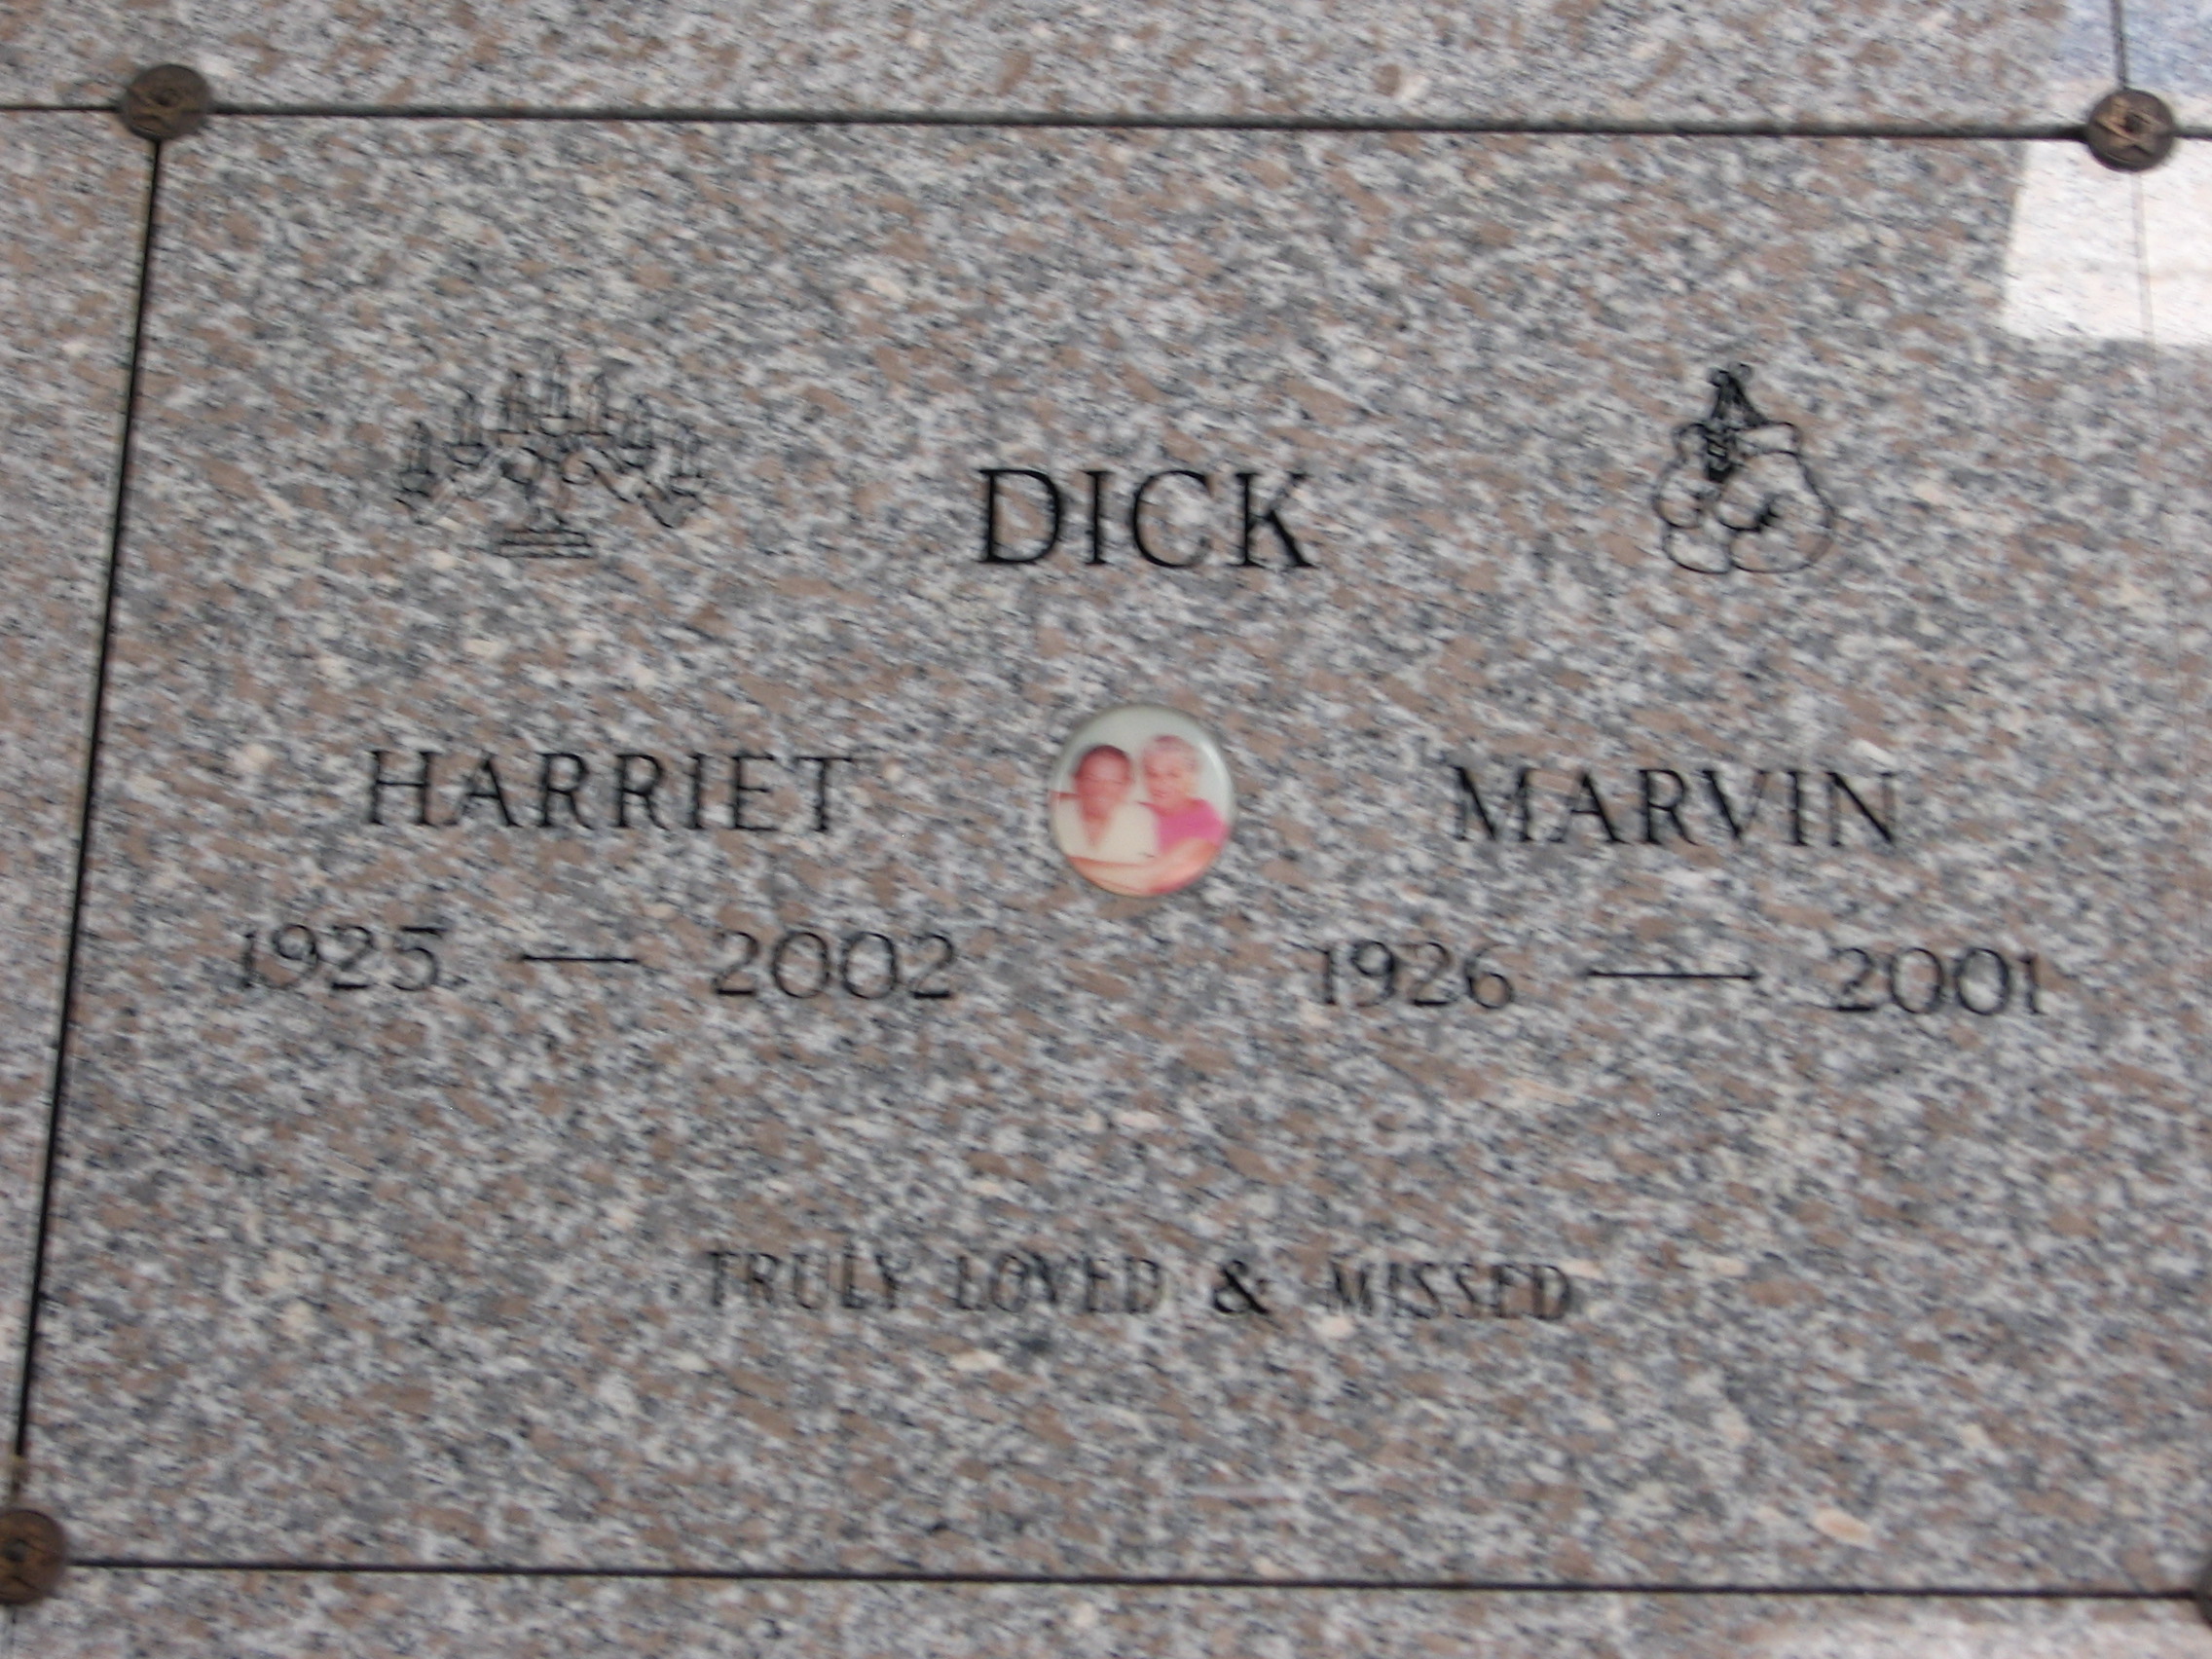 Harriet Dick